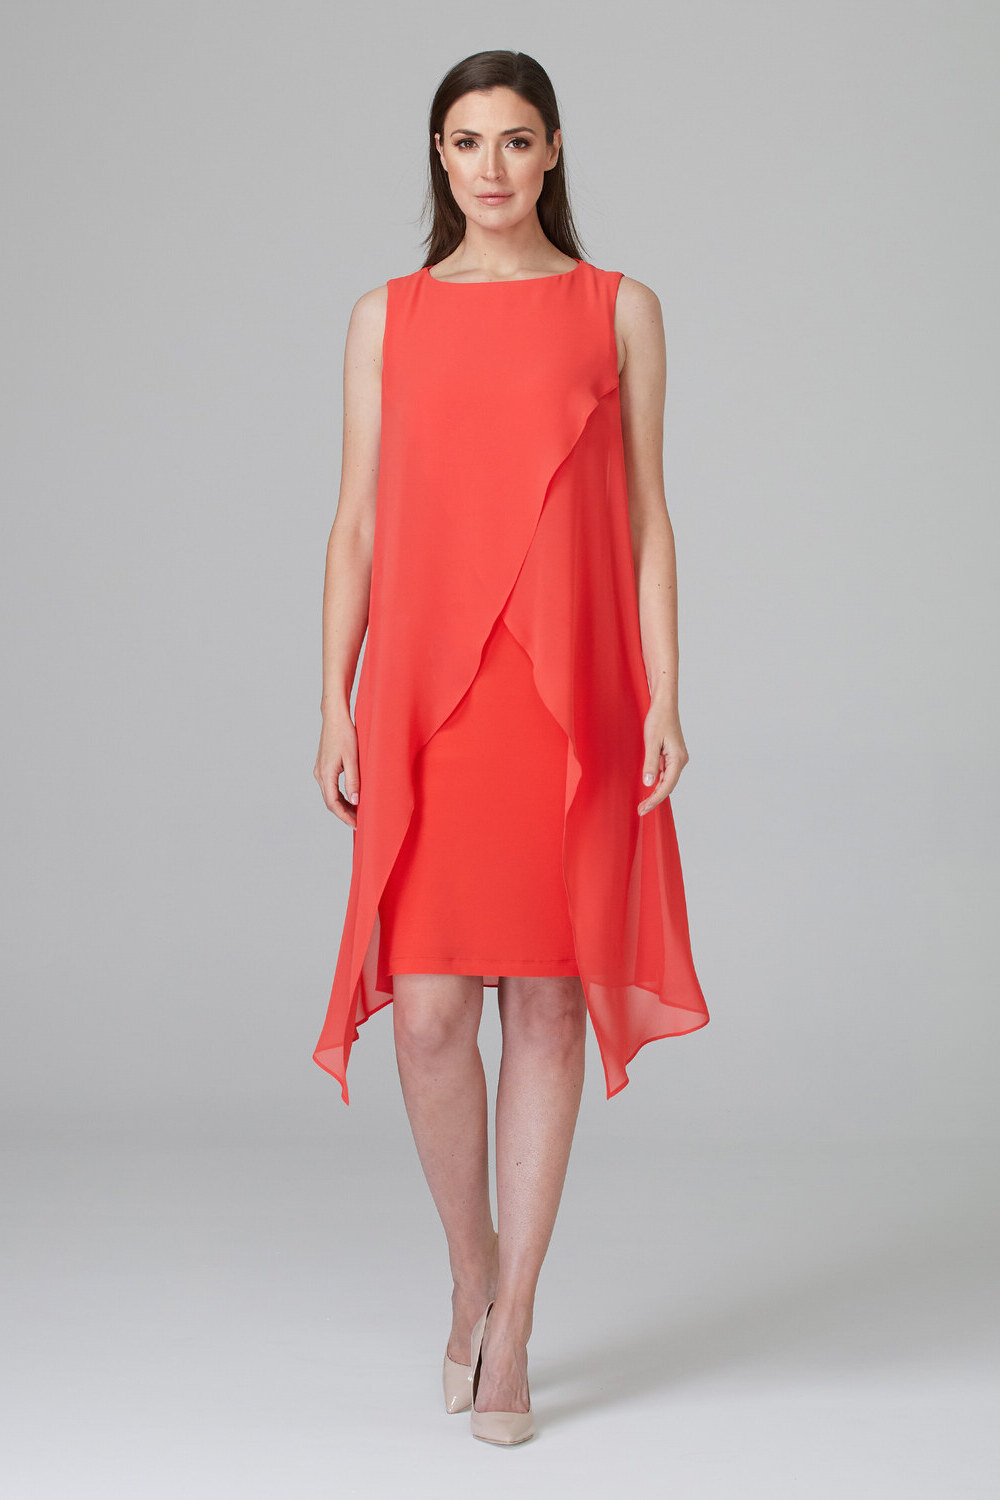 Joseph Ribkoff Dress Style 201220. Papaya